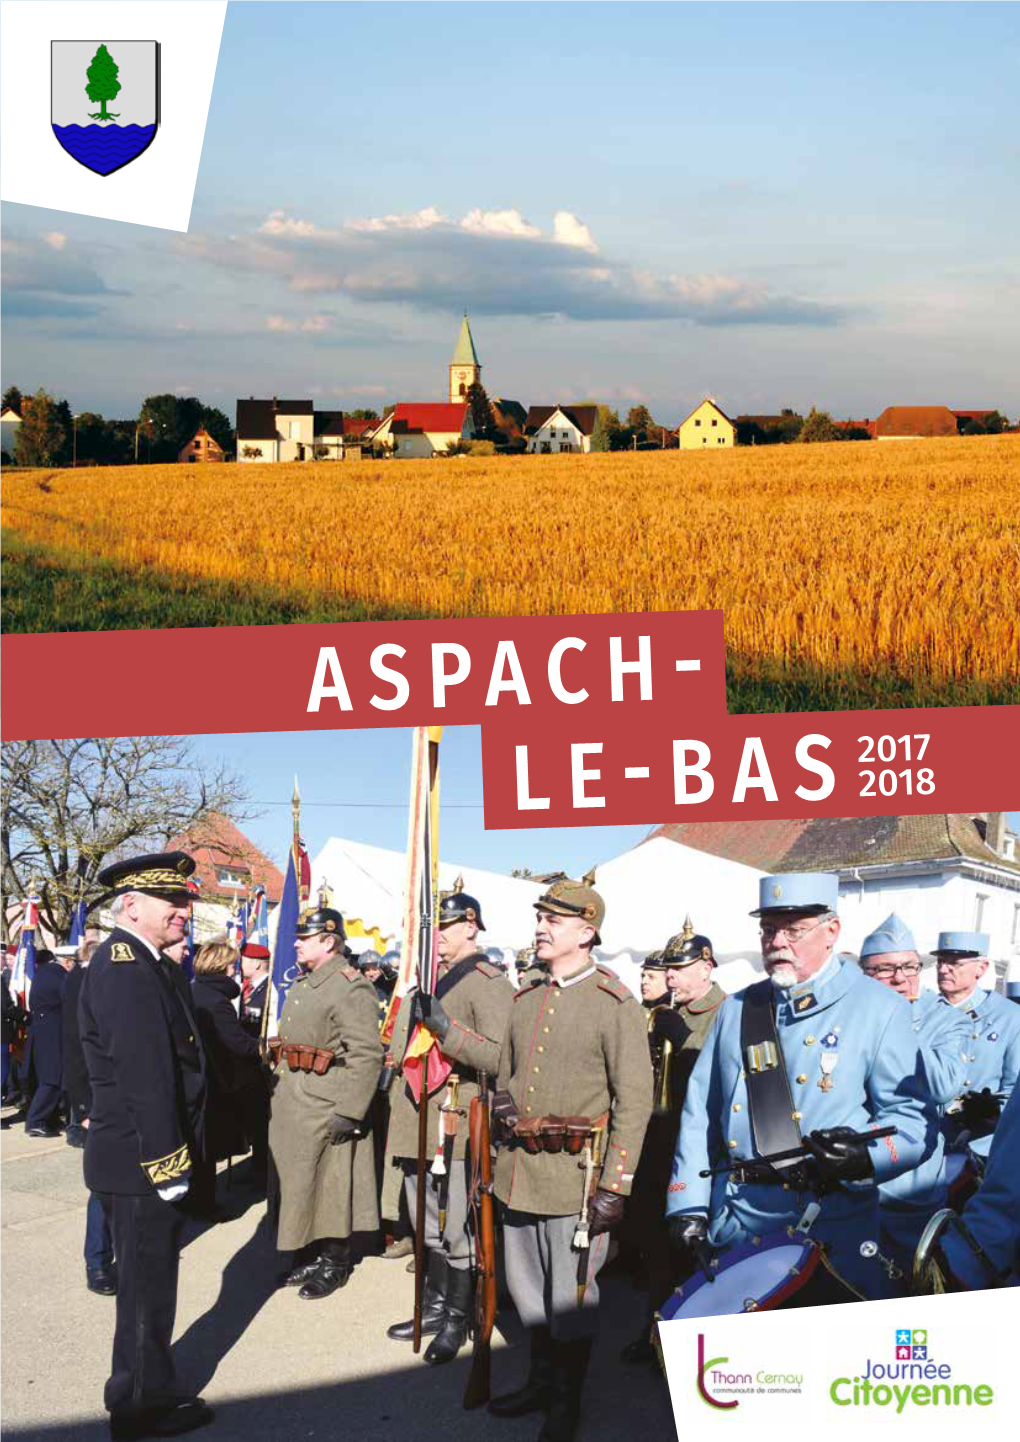 Aspach- Le-Bas 2017